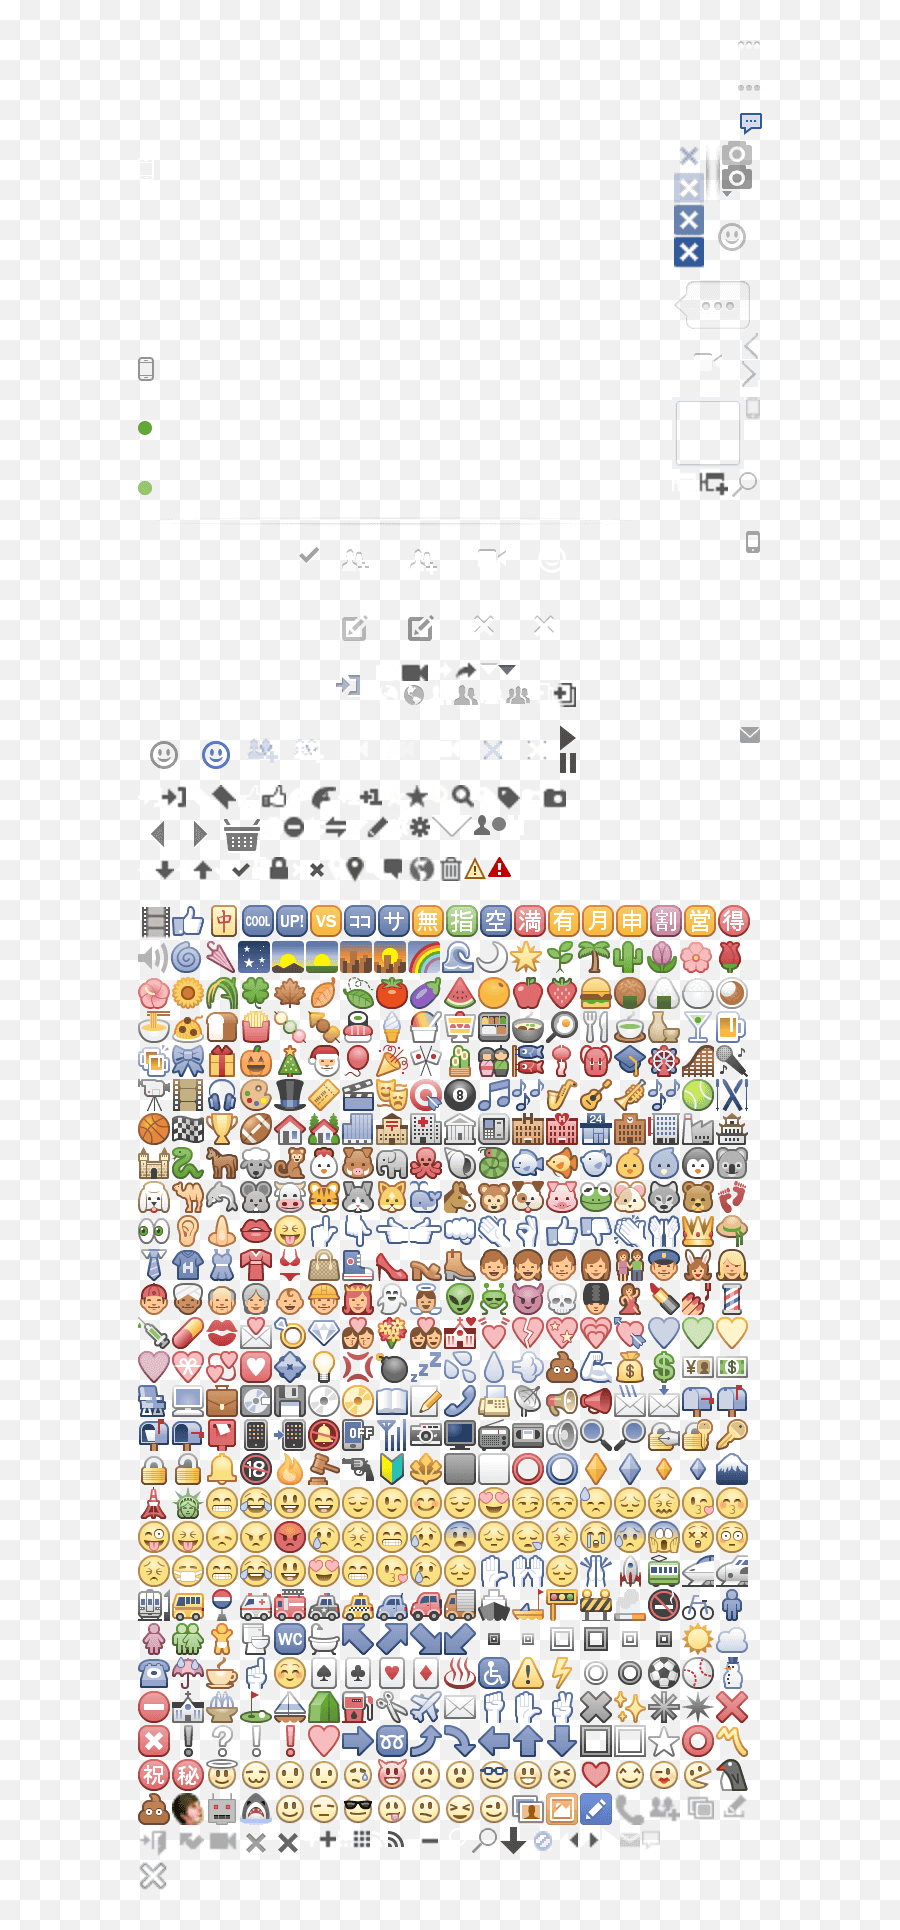 Nuove Emoticon Per Post E Commenti Su - Number Emoji,Tastiera Emoji